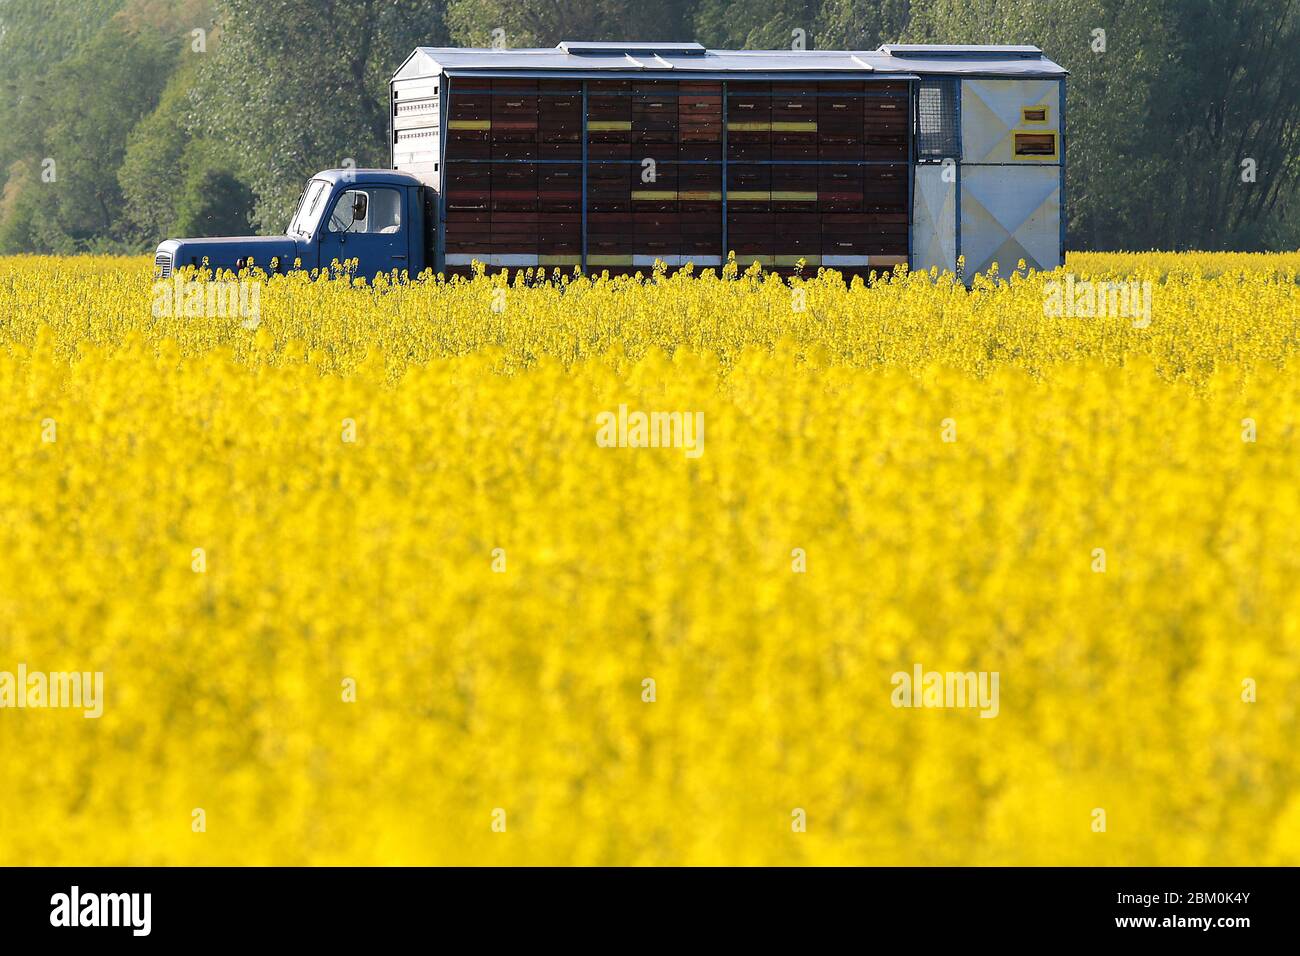 Ruches dans le camion dans un champ de colza jaune Banque D'Images